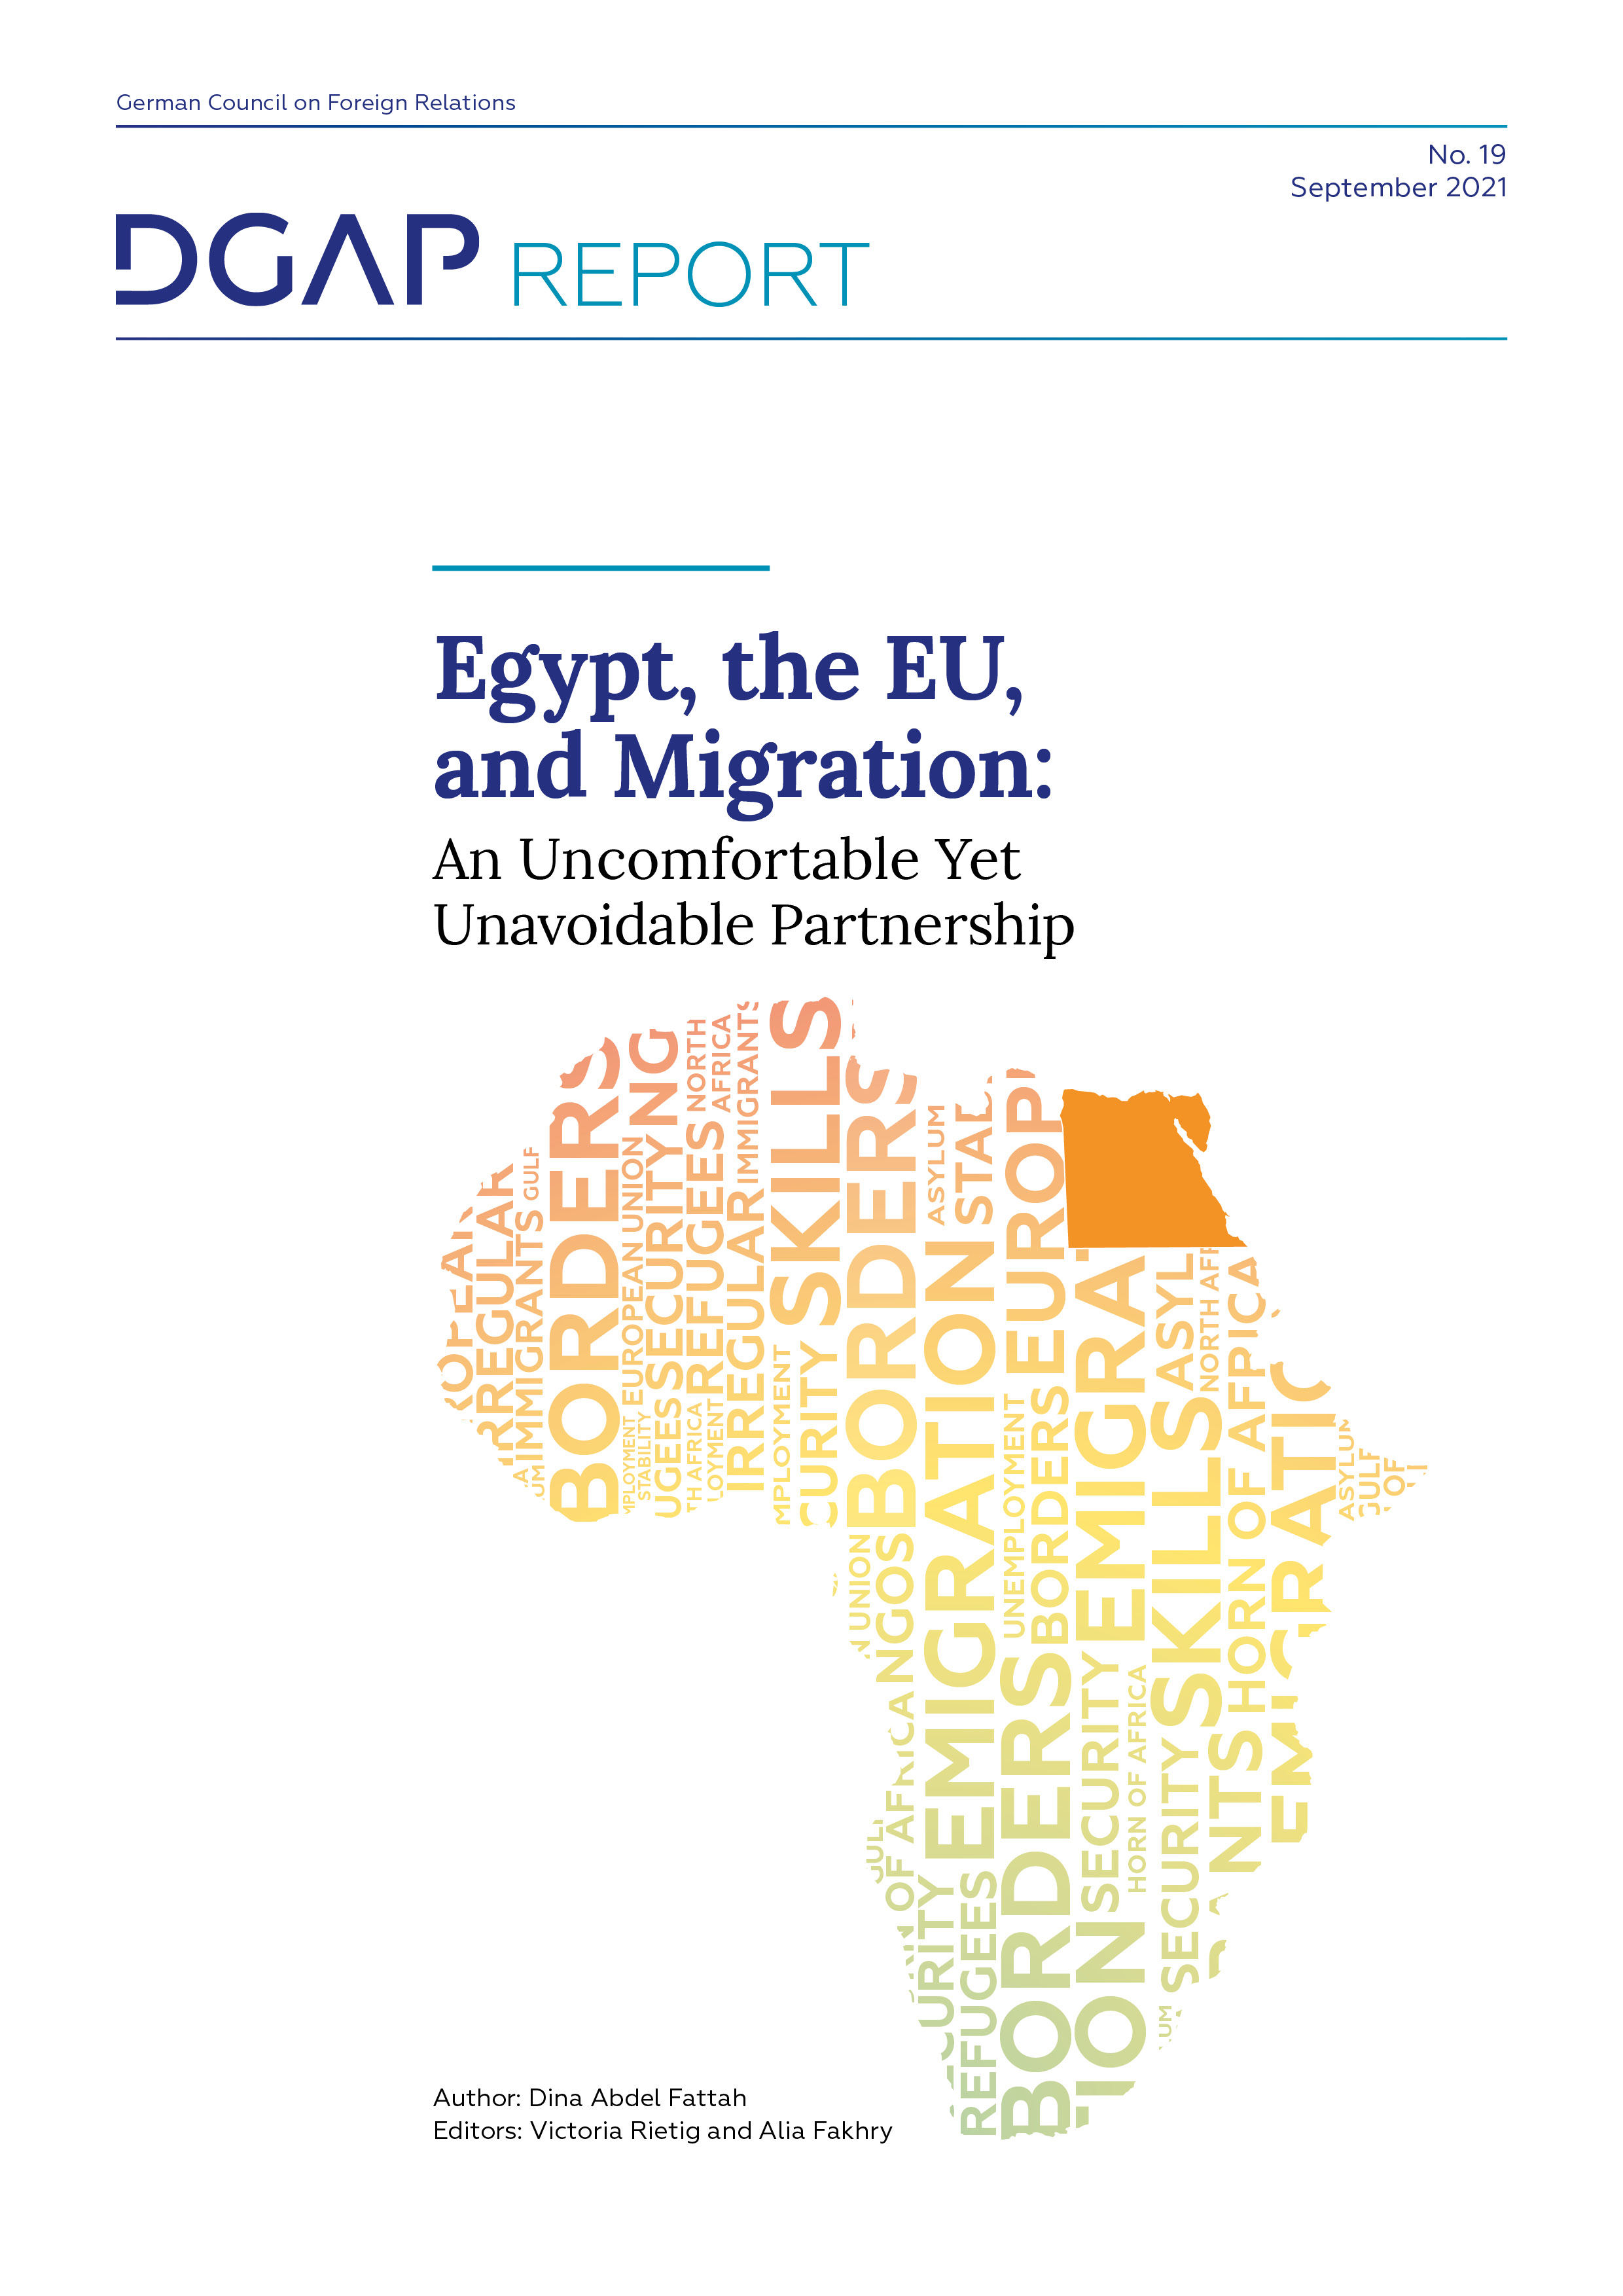 DGAP Report No. 18, September 2021, 18 pp. - Egypt